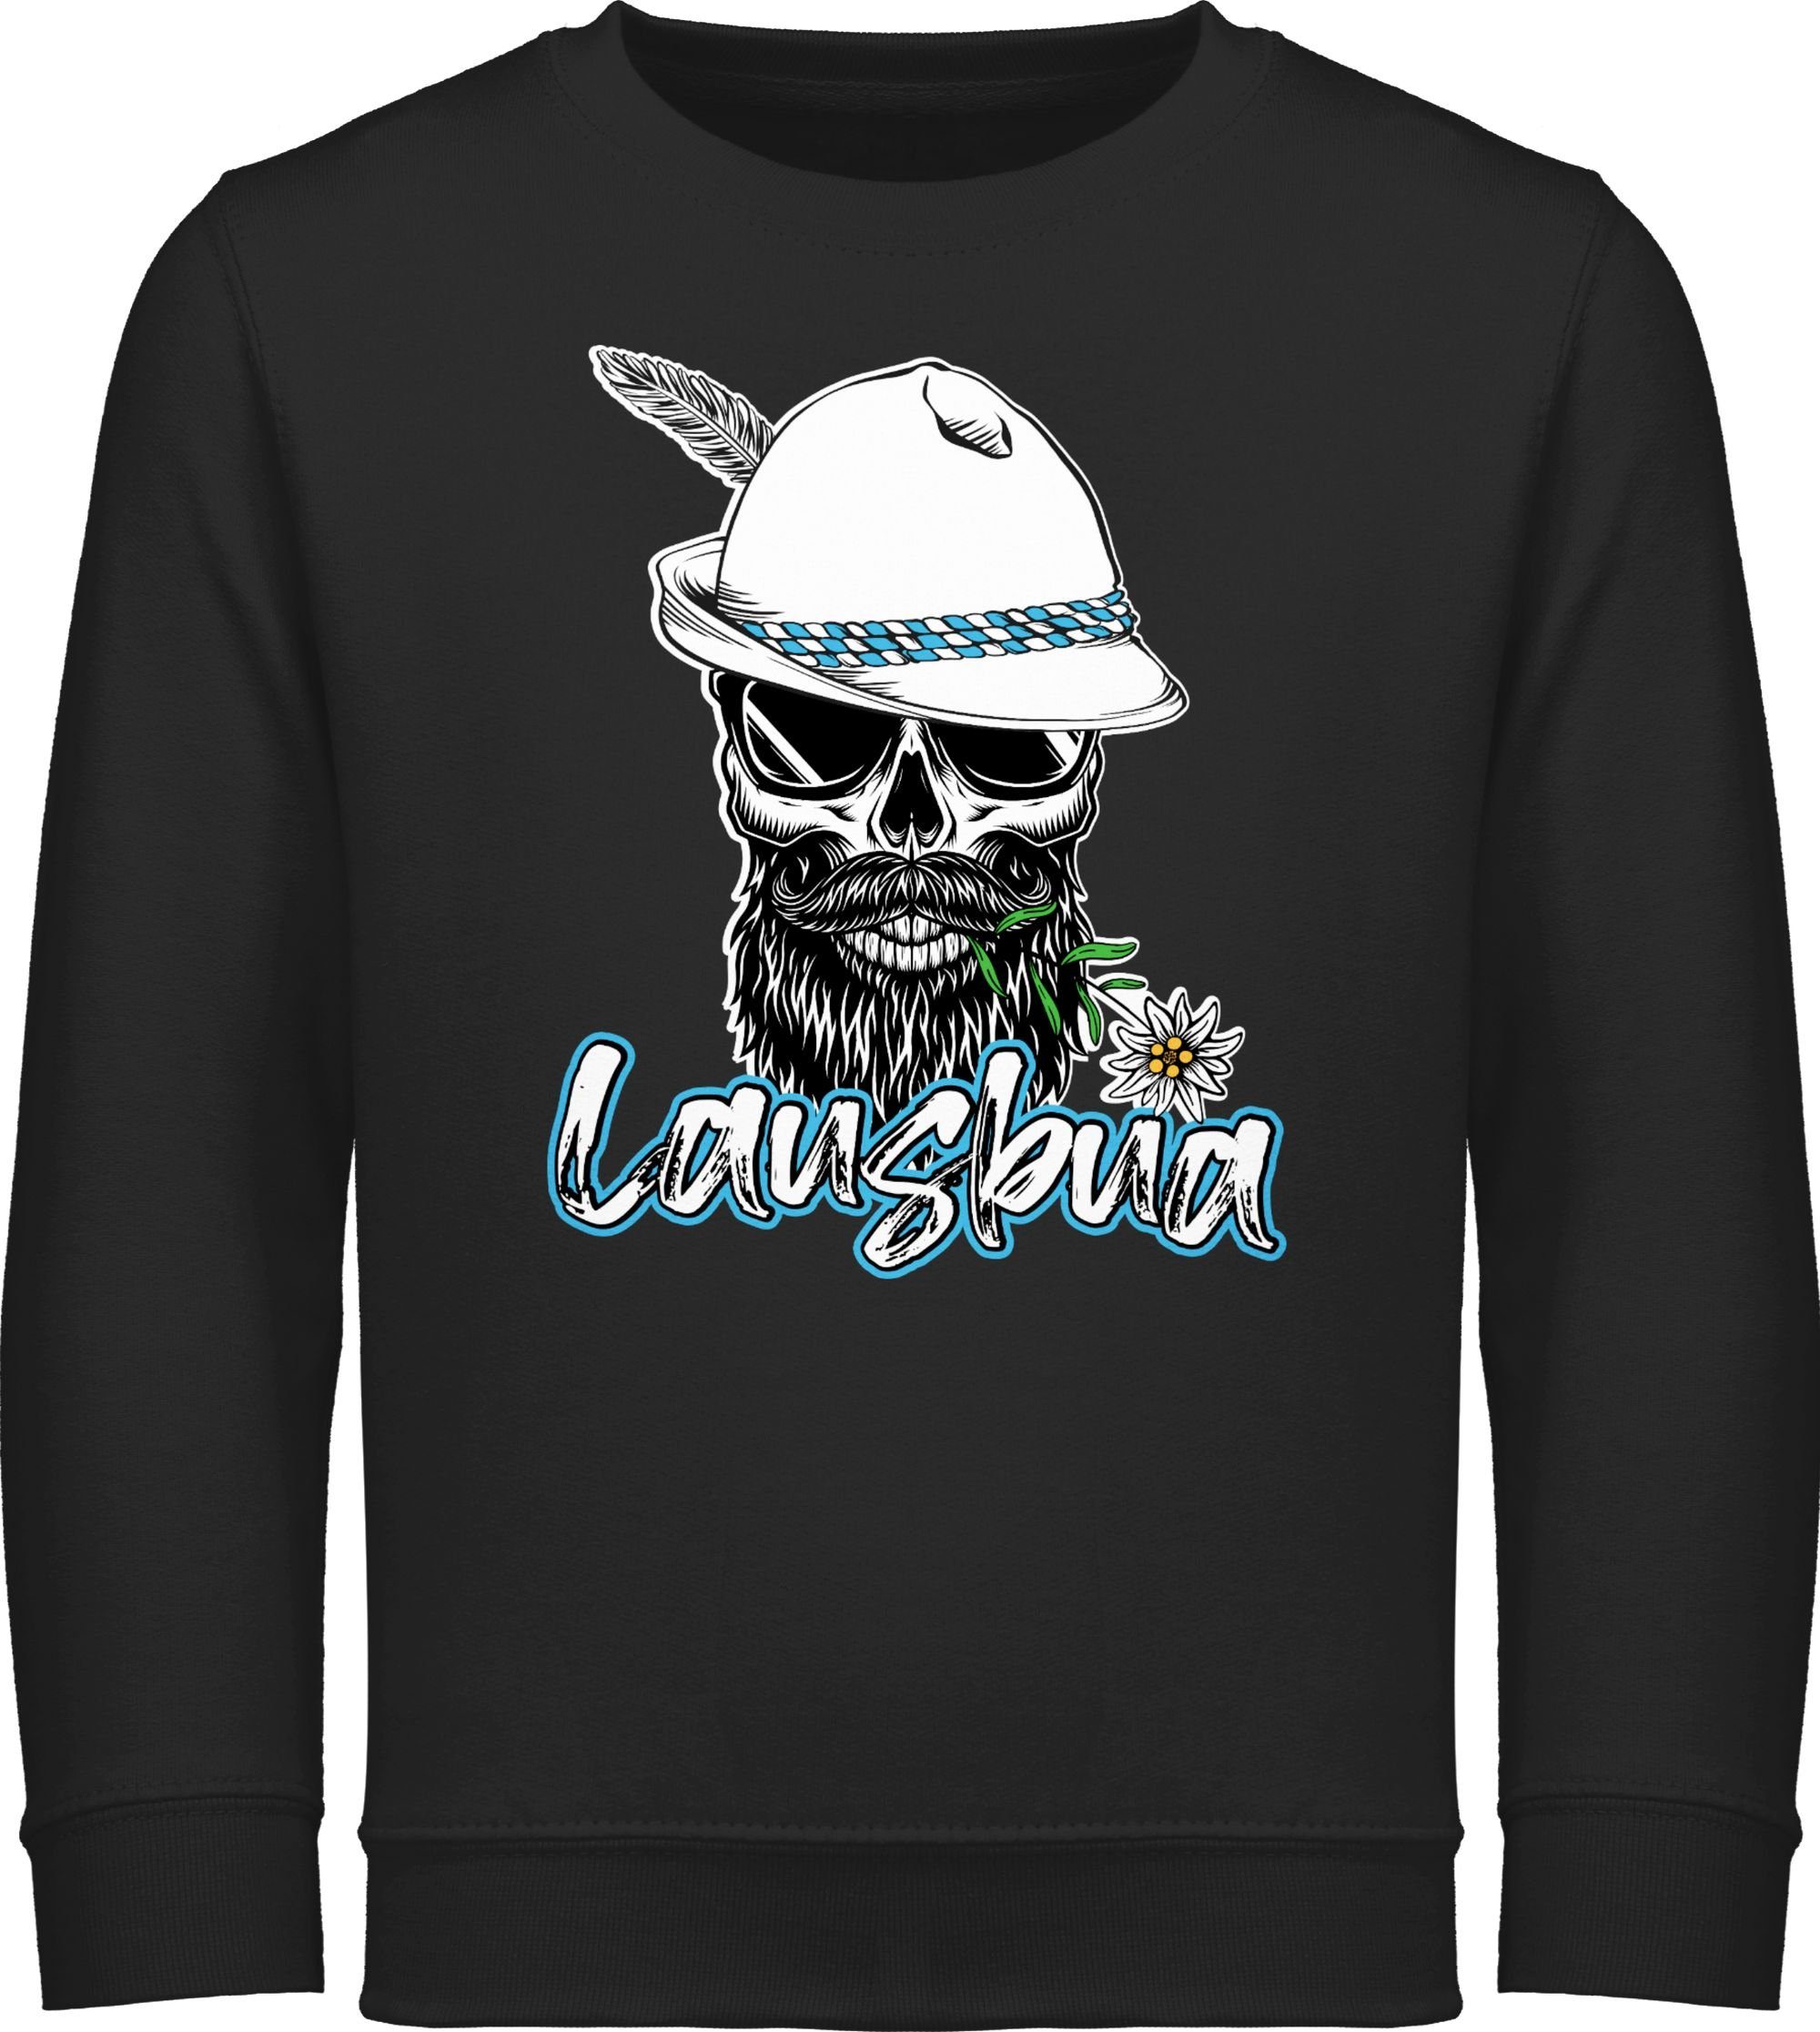 Shirtracer Sweatshirt Lausbua Totenkopf Skull 1 für Oktoberfest Schwarz Mode Outfit Kinder Bayrisch Schlingel Lausbub